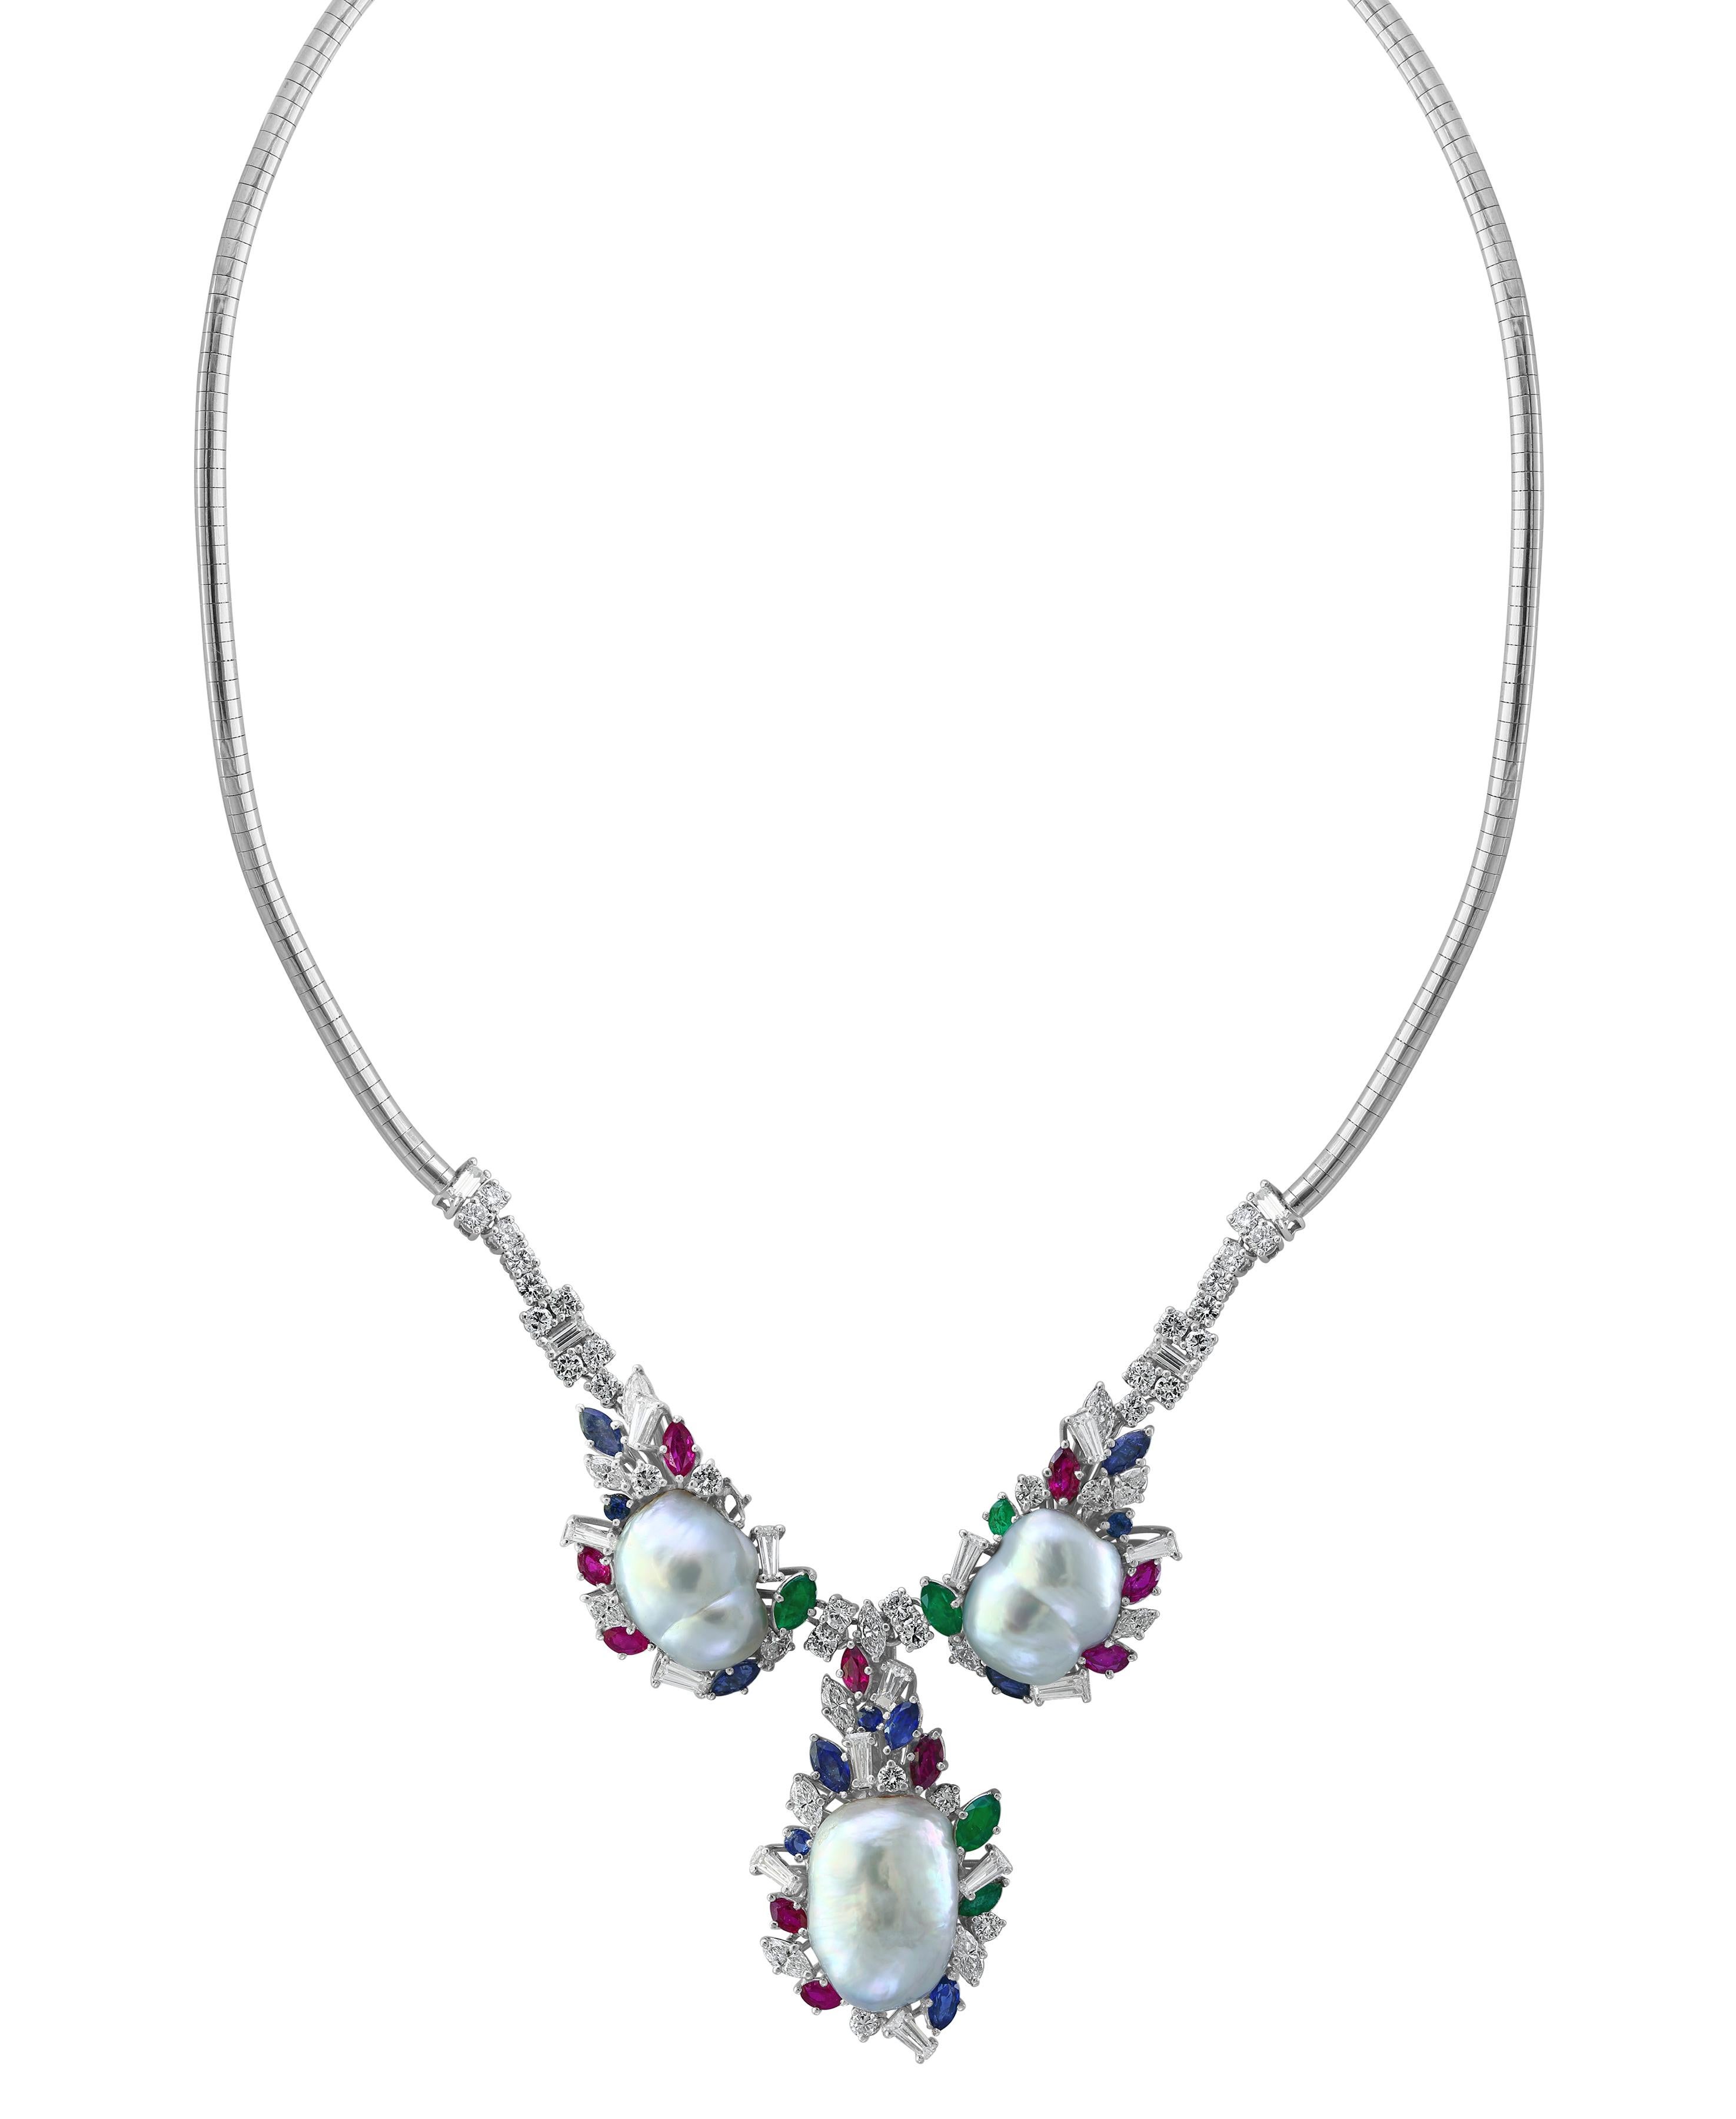 Smaragd Rubin Saphir Diamant Perle  Halskette  Satz in 18 K Gold
Schöne Halskette
Diese Halskette hat alle Edelsteine 
Alle sind Bigli  und beste Qualität.
Das Gesamtgewicht der Farbsteine beträgt etwa  5,0 ct
Diamanten  etwa 6,5 ct
der mittlere